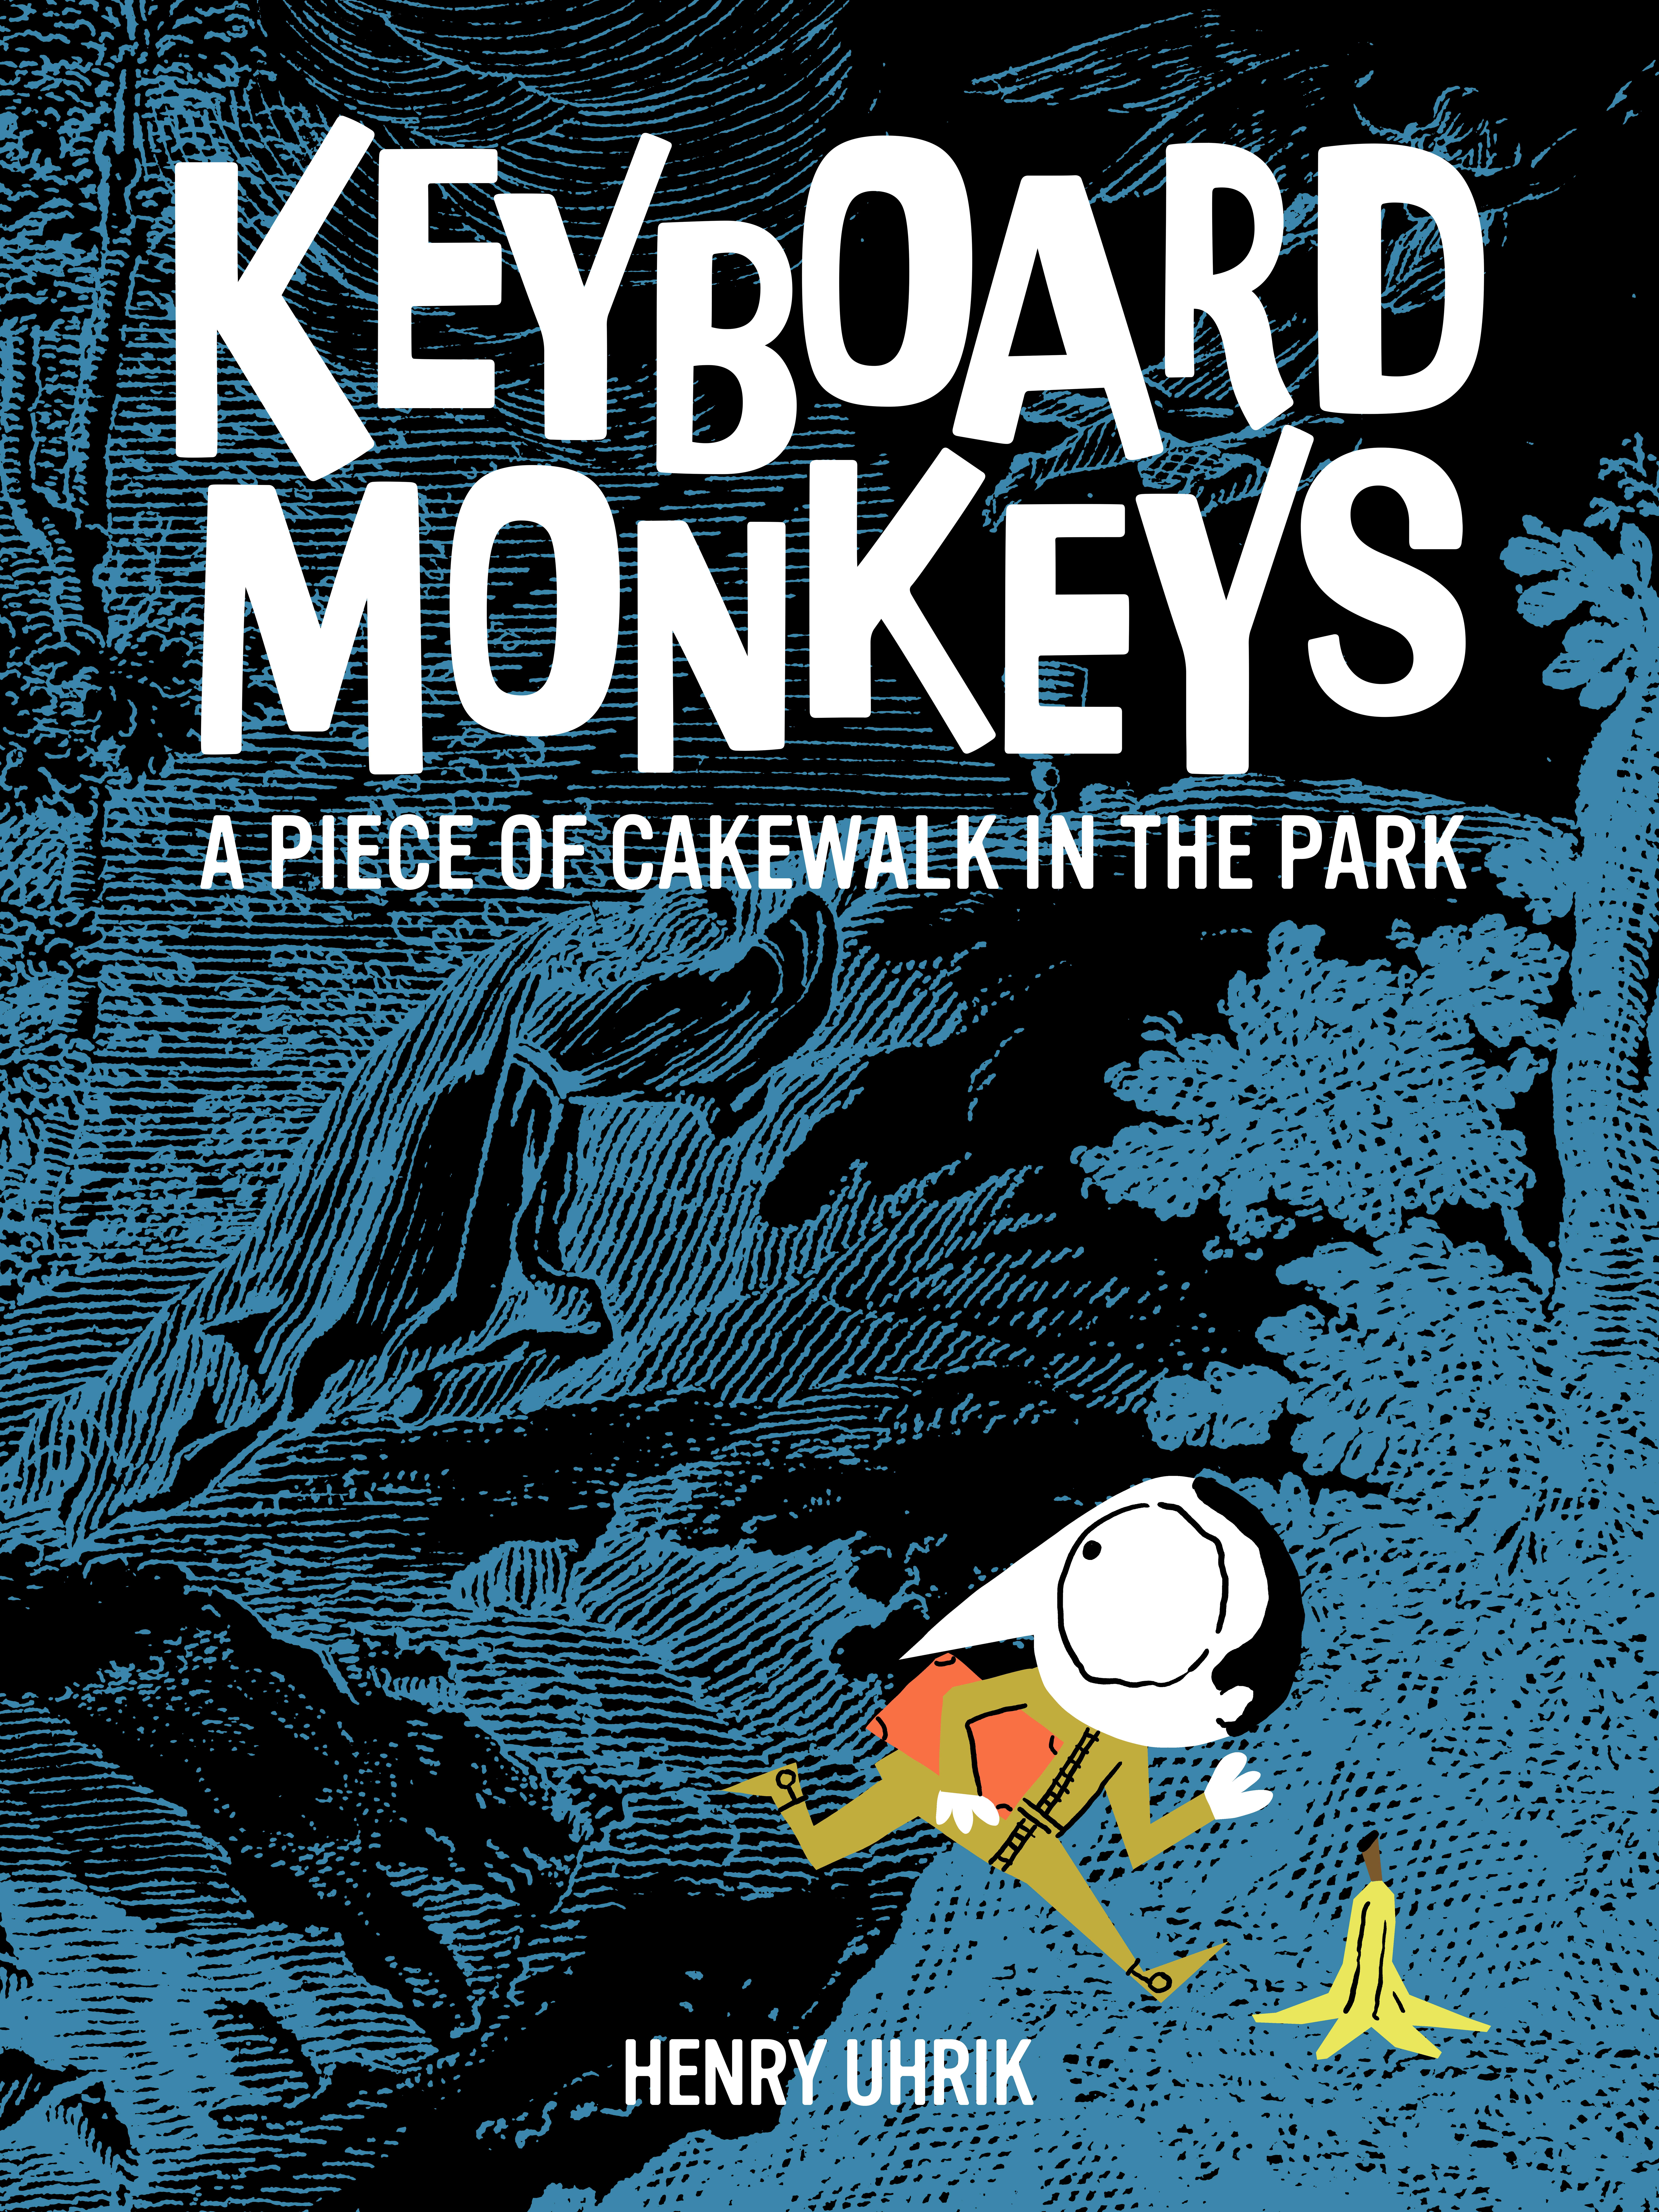 Keyboard Monkeys: A Piece of Cakewalk in the Park